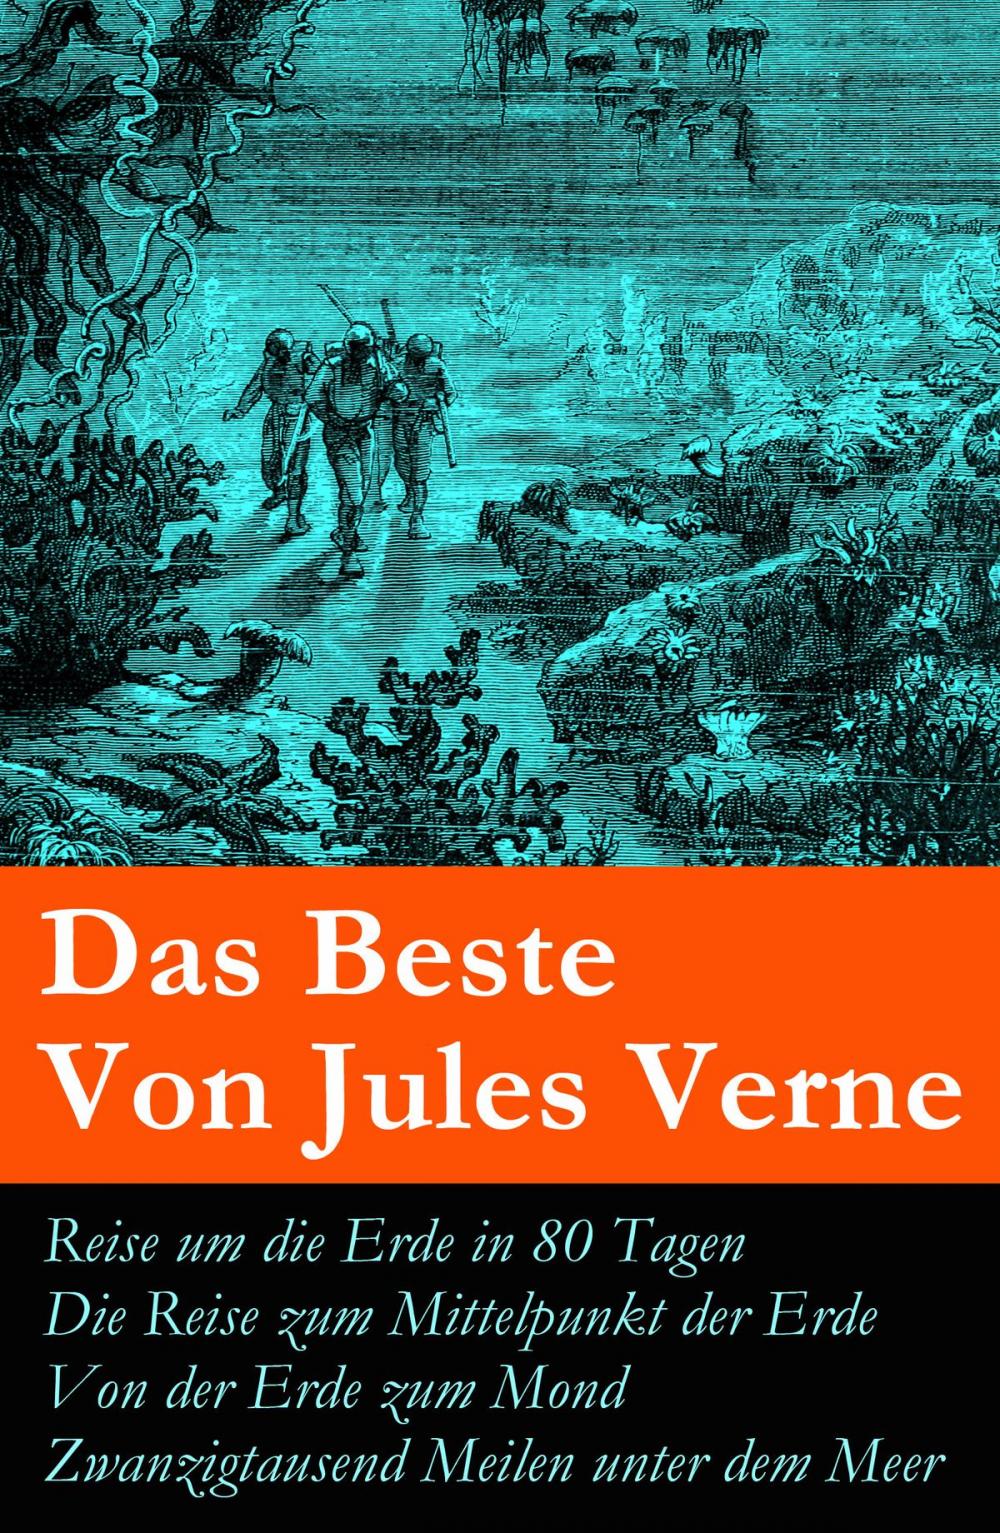 Big bigCover of Das Beste Von Jules Verne: Reise um die Erde in 80 Tagen + Die Reise zum Mittelpunkt der Erde + Von der Erde zum Mond + Zwanzigtausend Meilen unter dem Meer